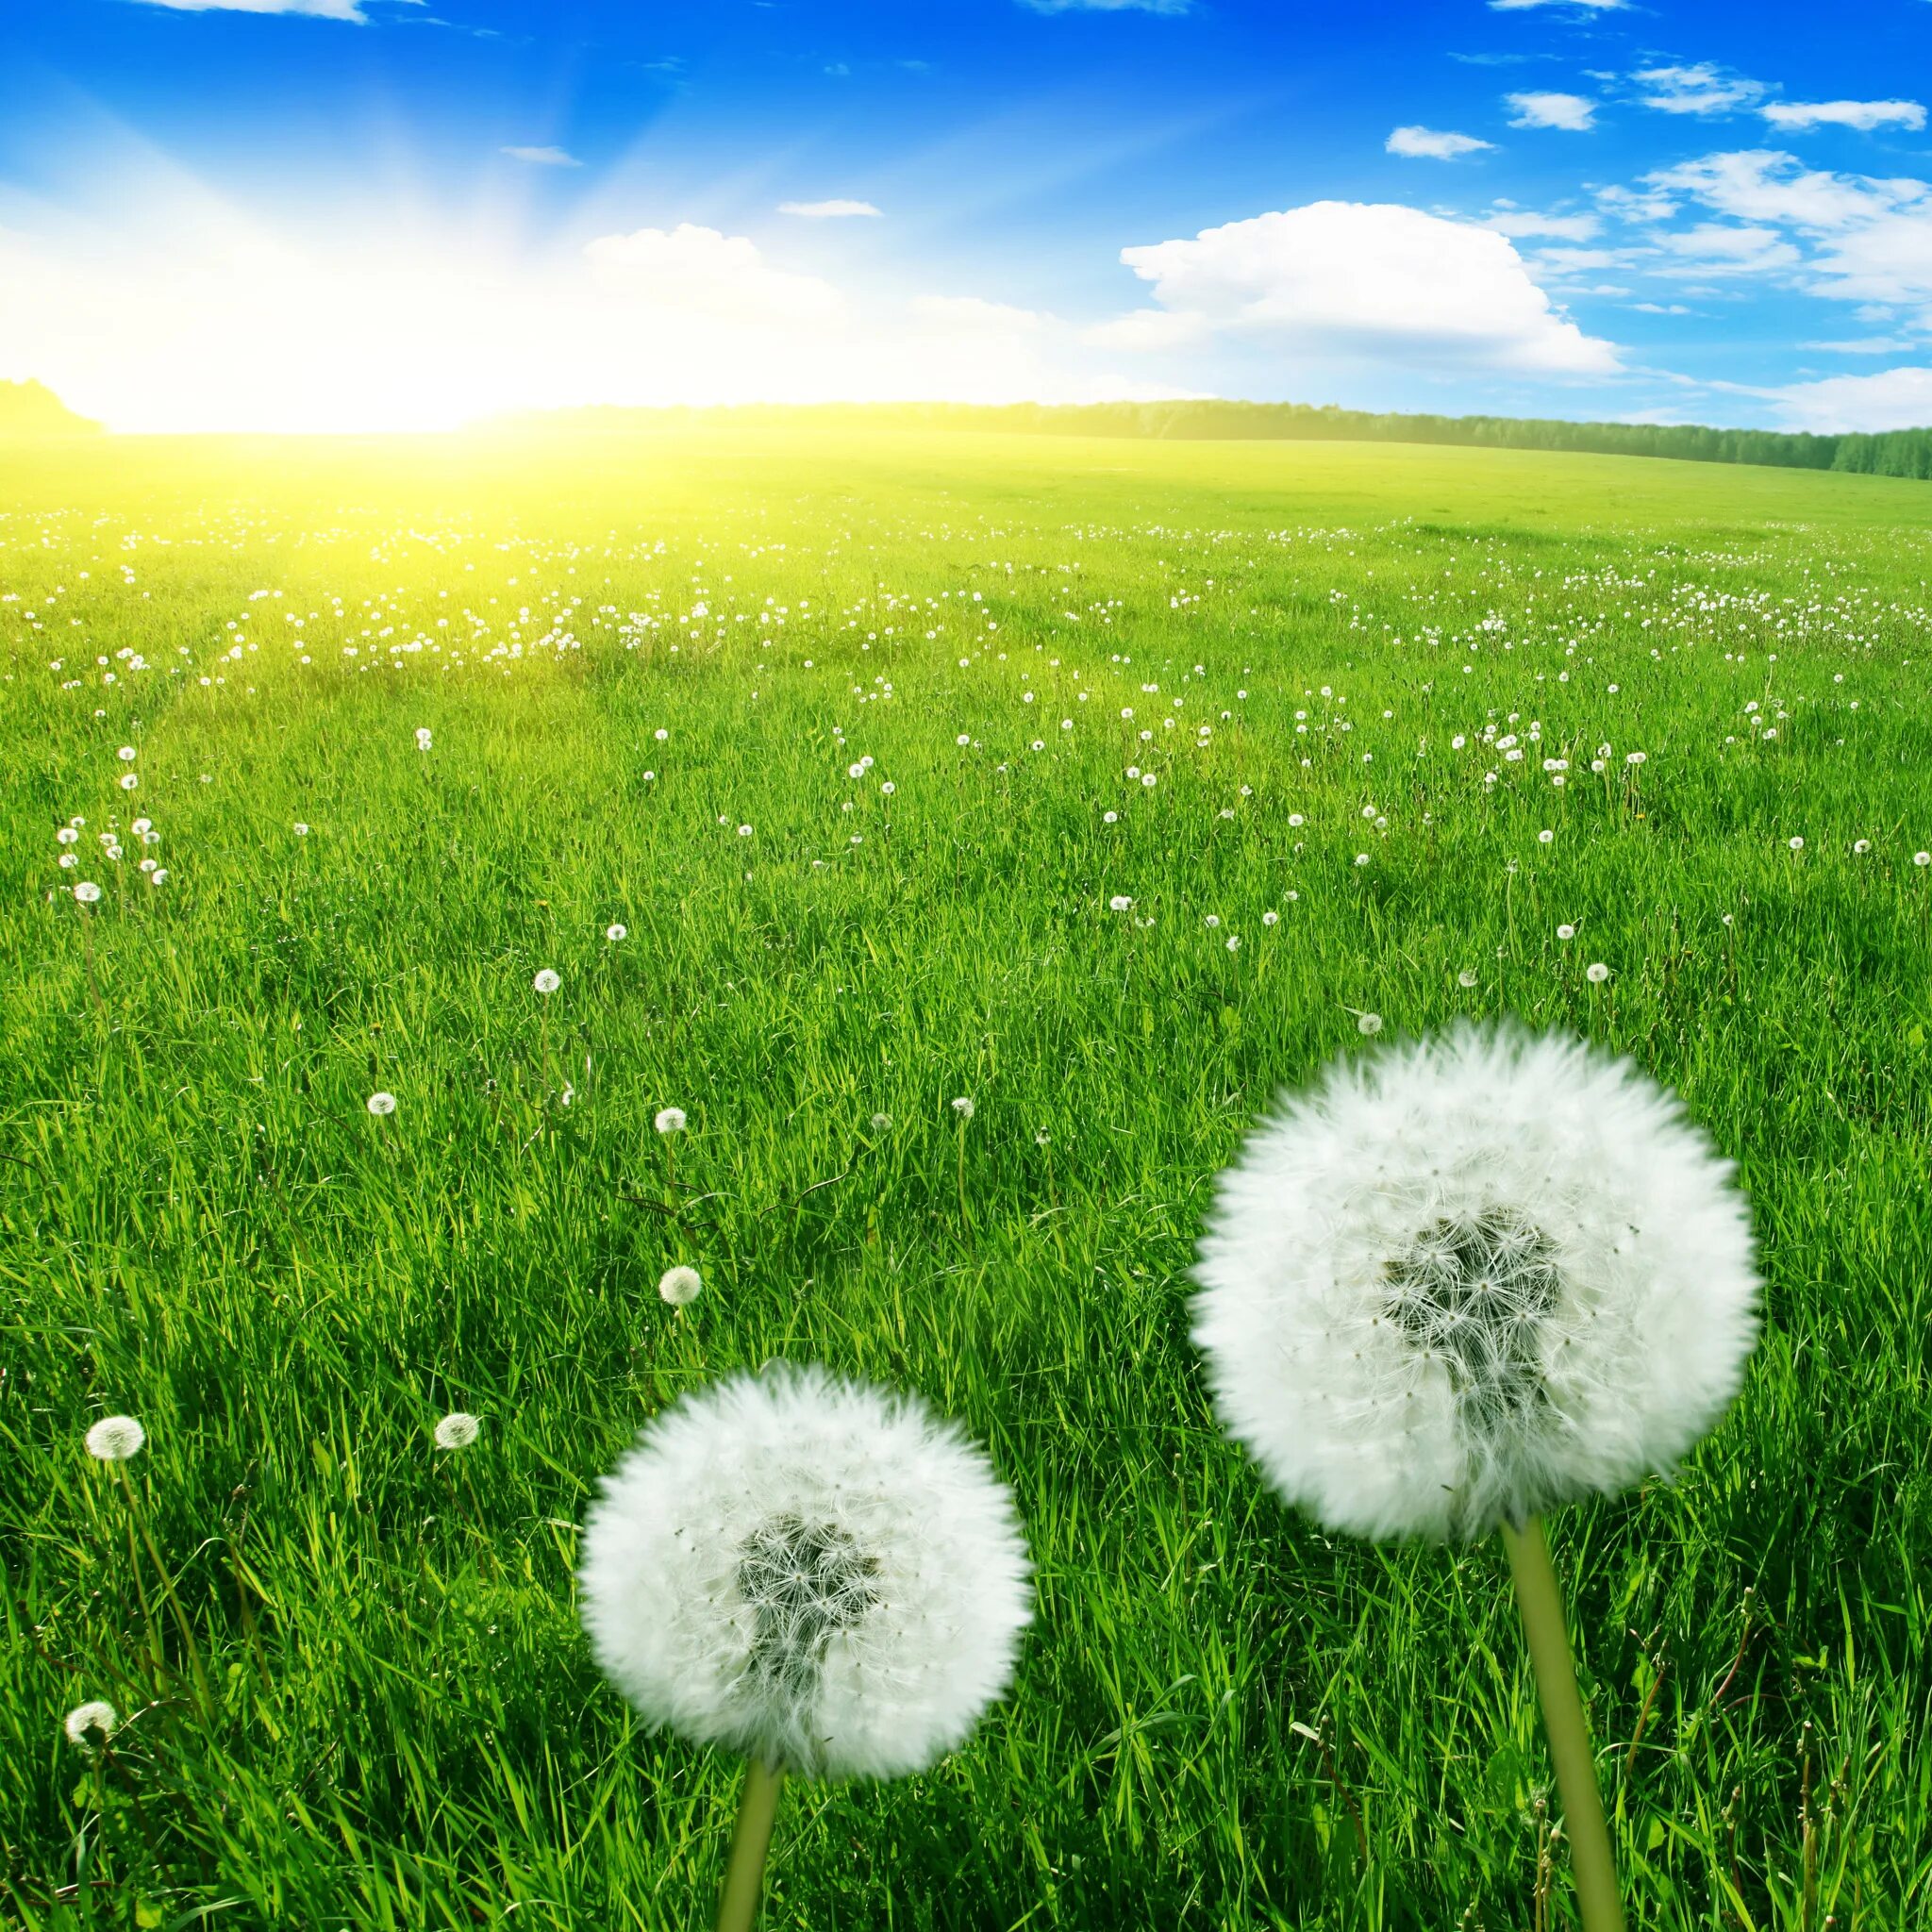 С новым солнечным днем. Тянь-Шанский одуванчик. Одуванчик белый. Одуванчики в траве. Одуванчики на зеленой траве.